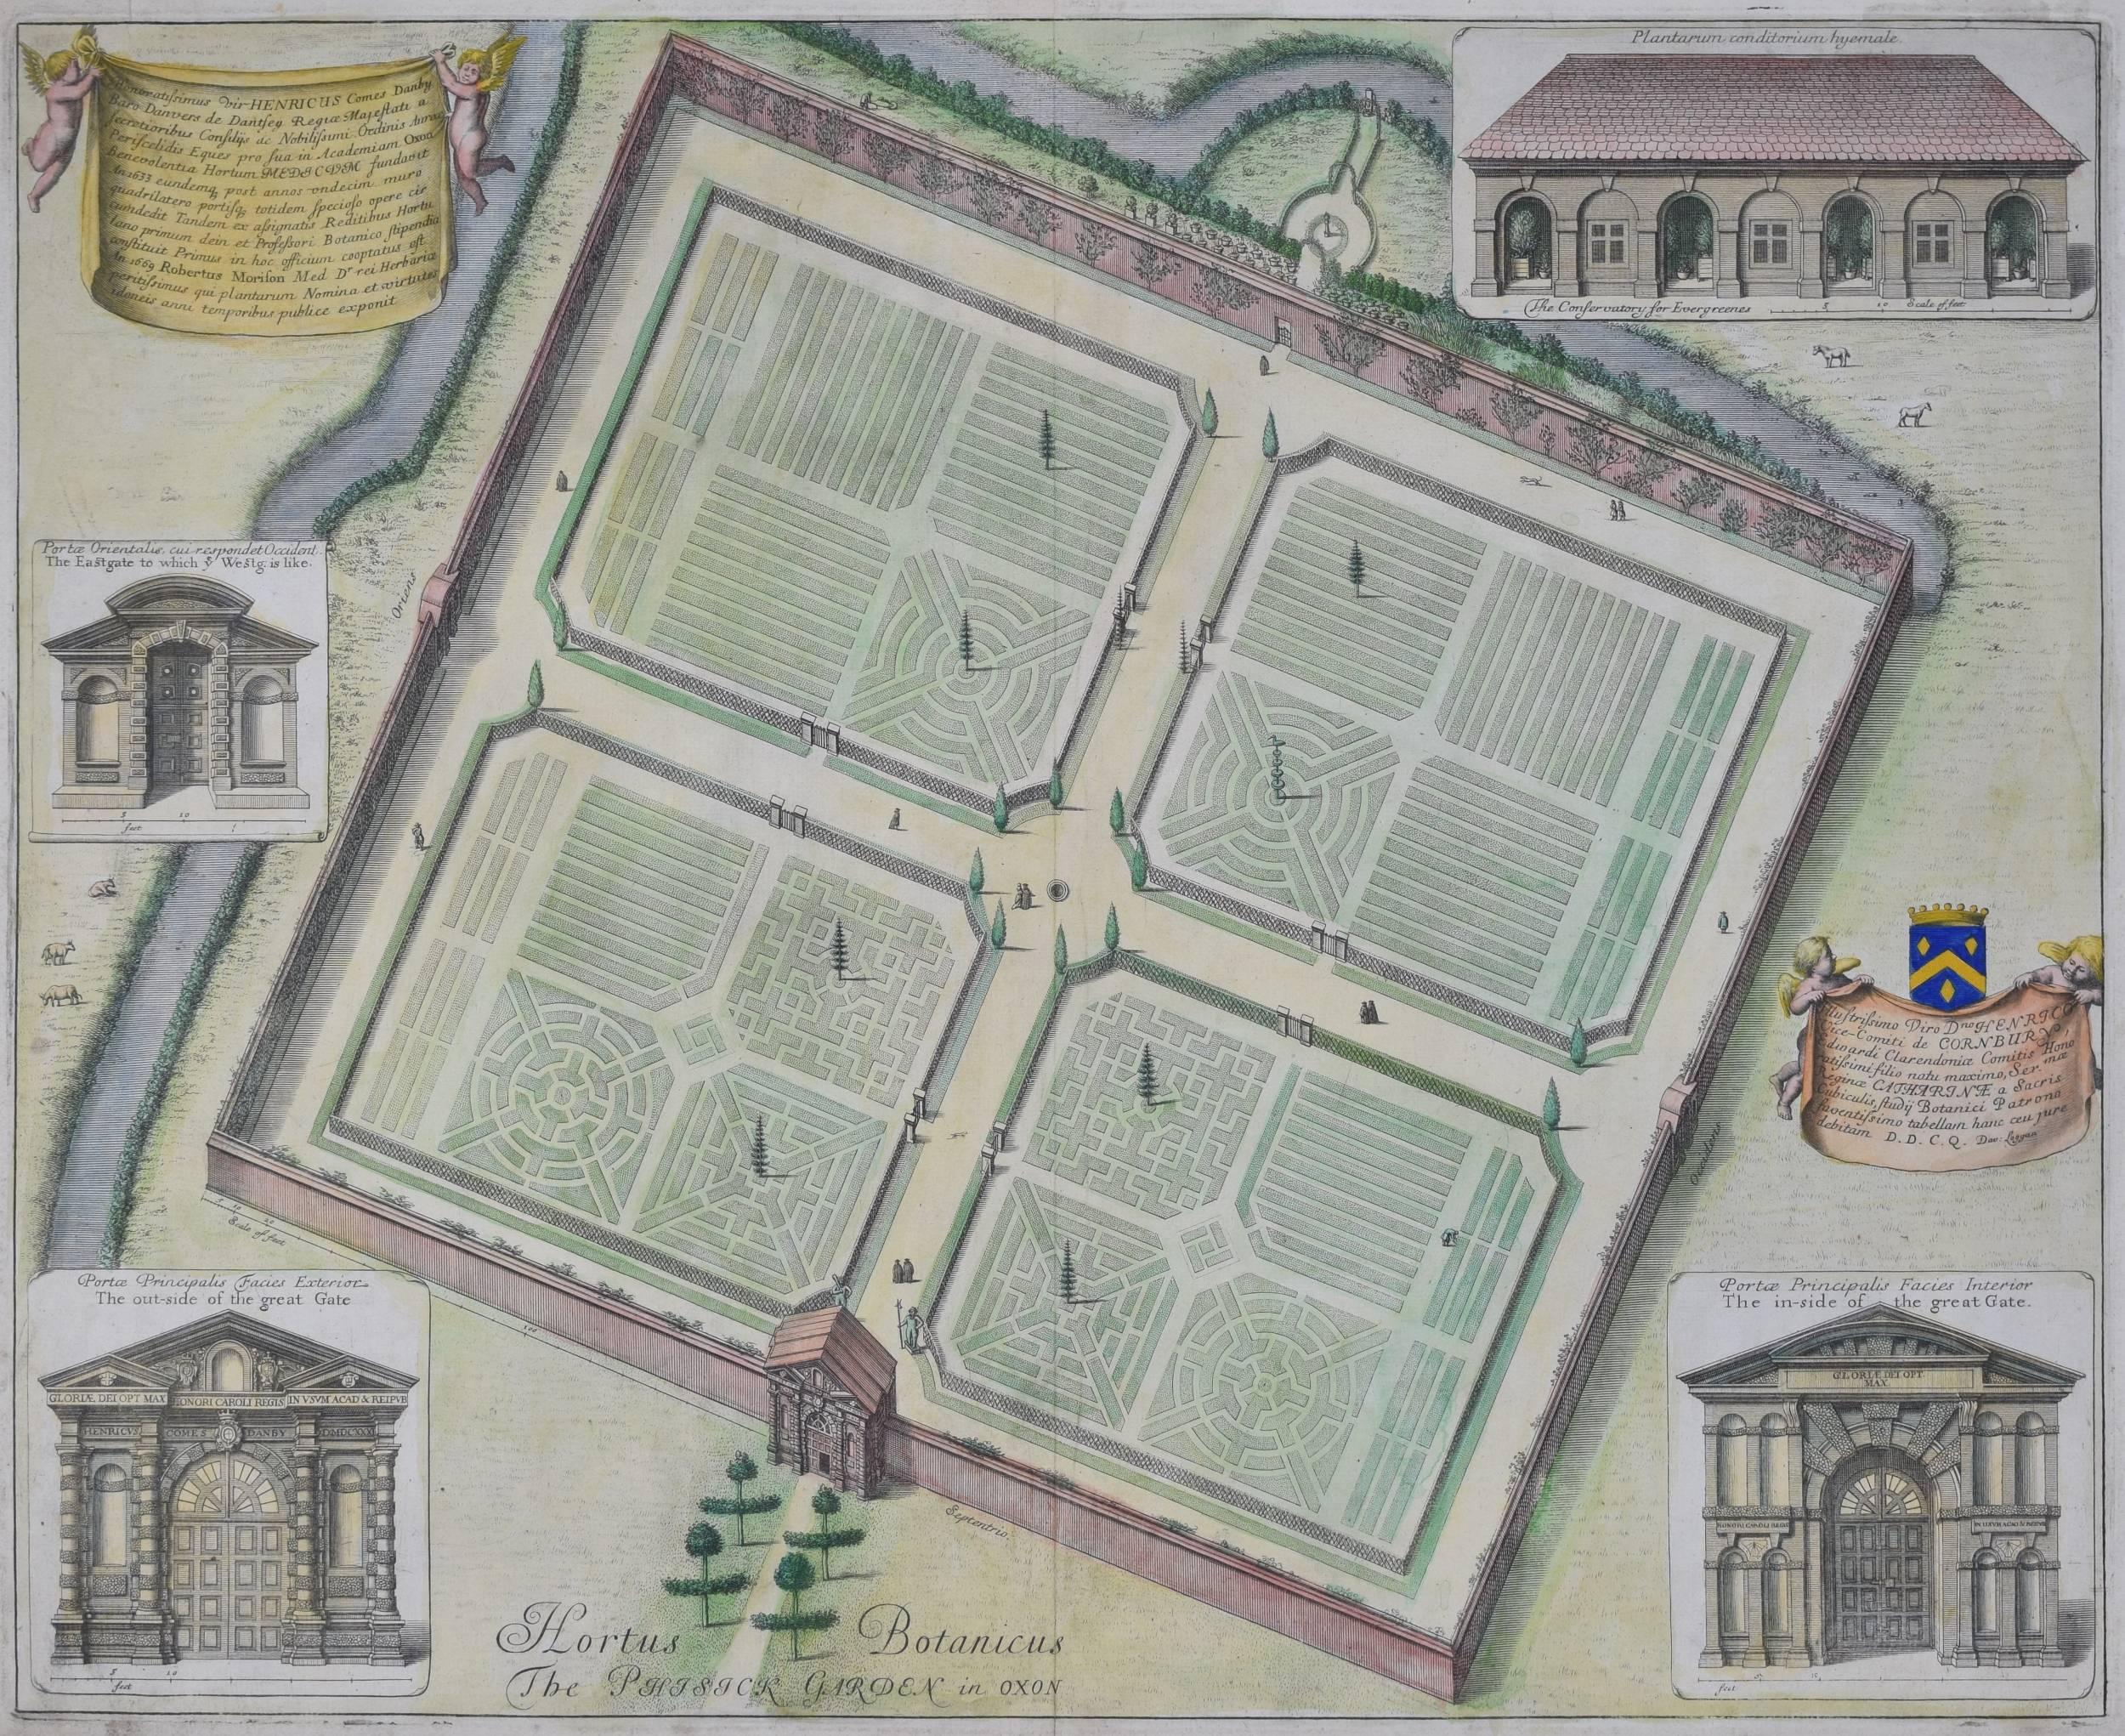 David Loggan (1634-1692)
Jardins botaniques, Oxford
Gravure, coloration ultérieure
41x50cm

Loggan est né de parents anglais et écossais, et a été baptisé à Danzig en 1634. Après avoir étudié la gravure à Danzig avec Willem Hondius (1598-1652 ou